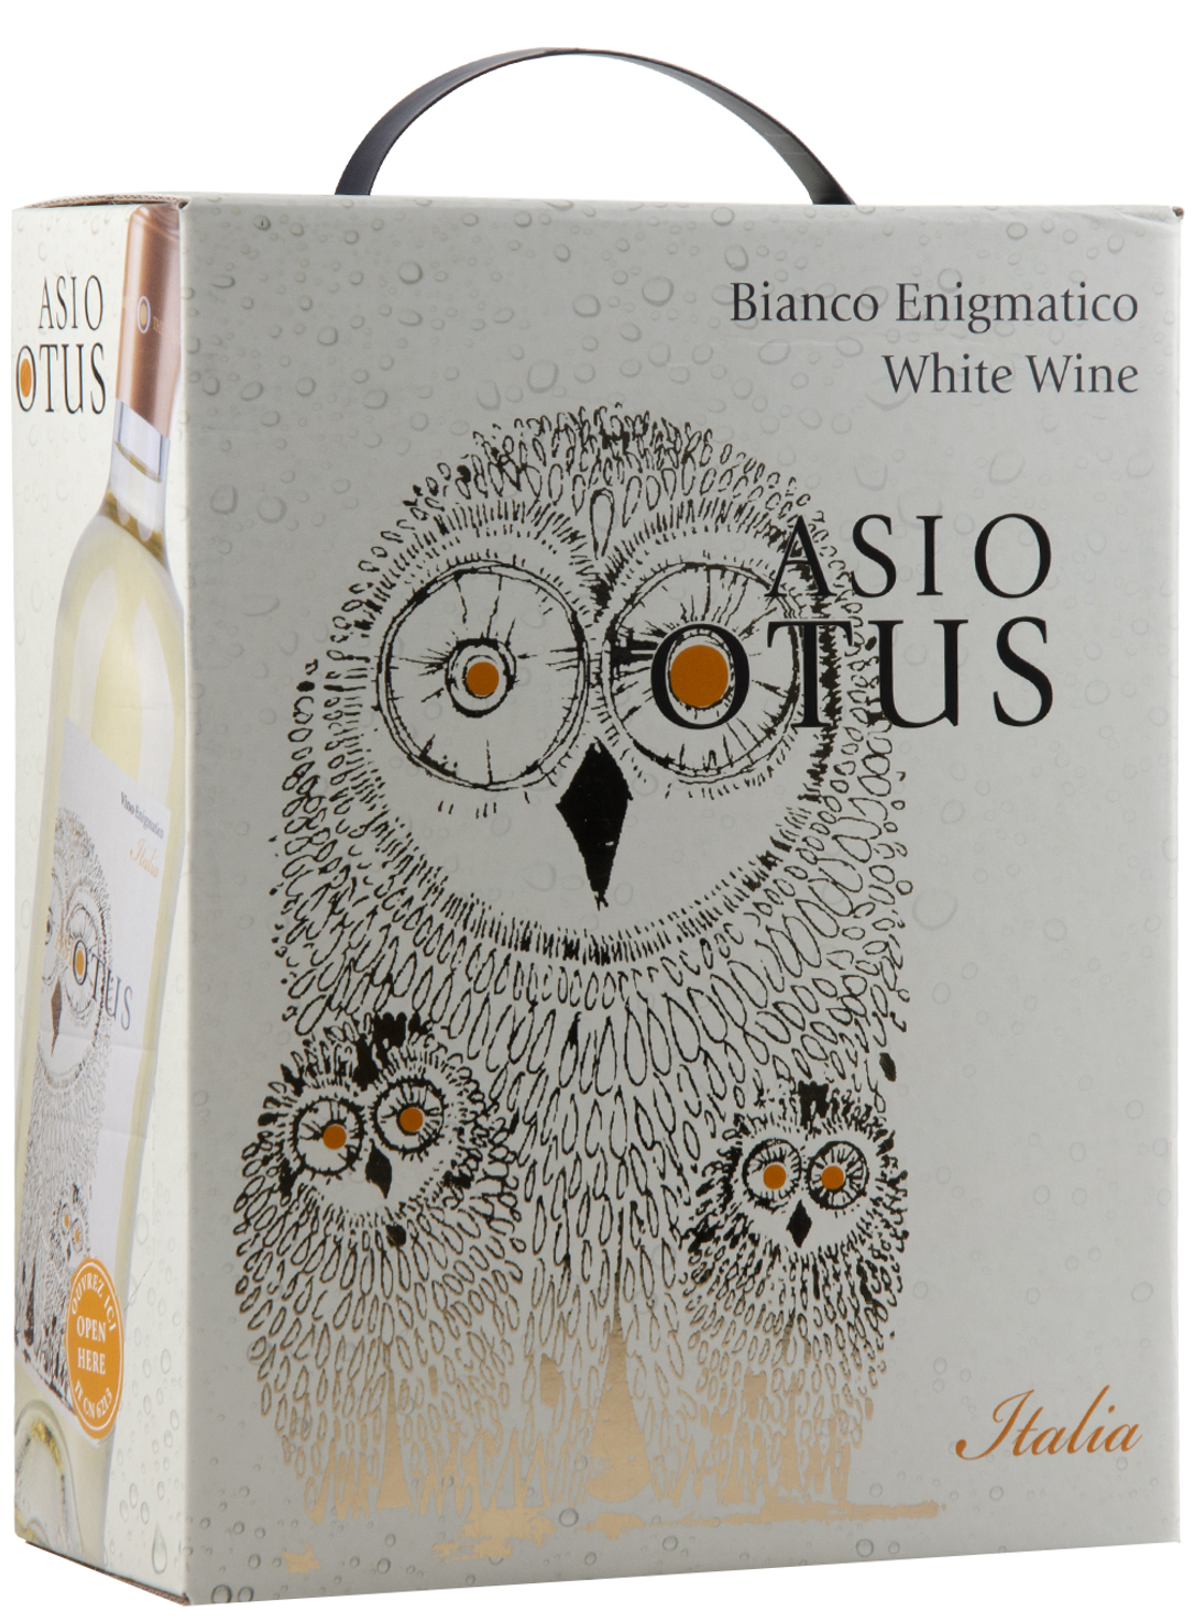 det er alt Persuasion Fascinate Asio Otus Bianco Enigmatico Winebox